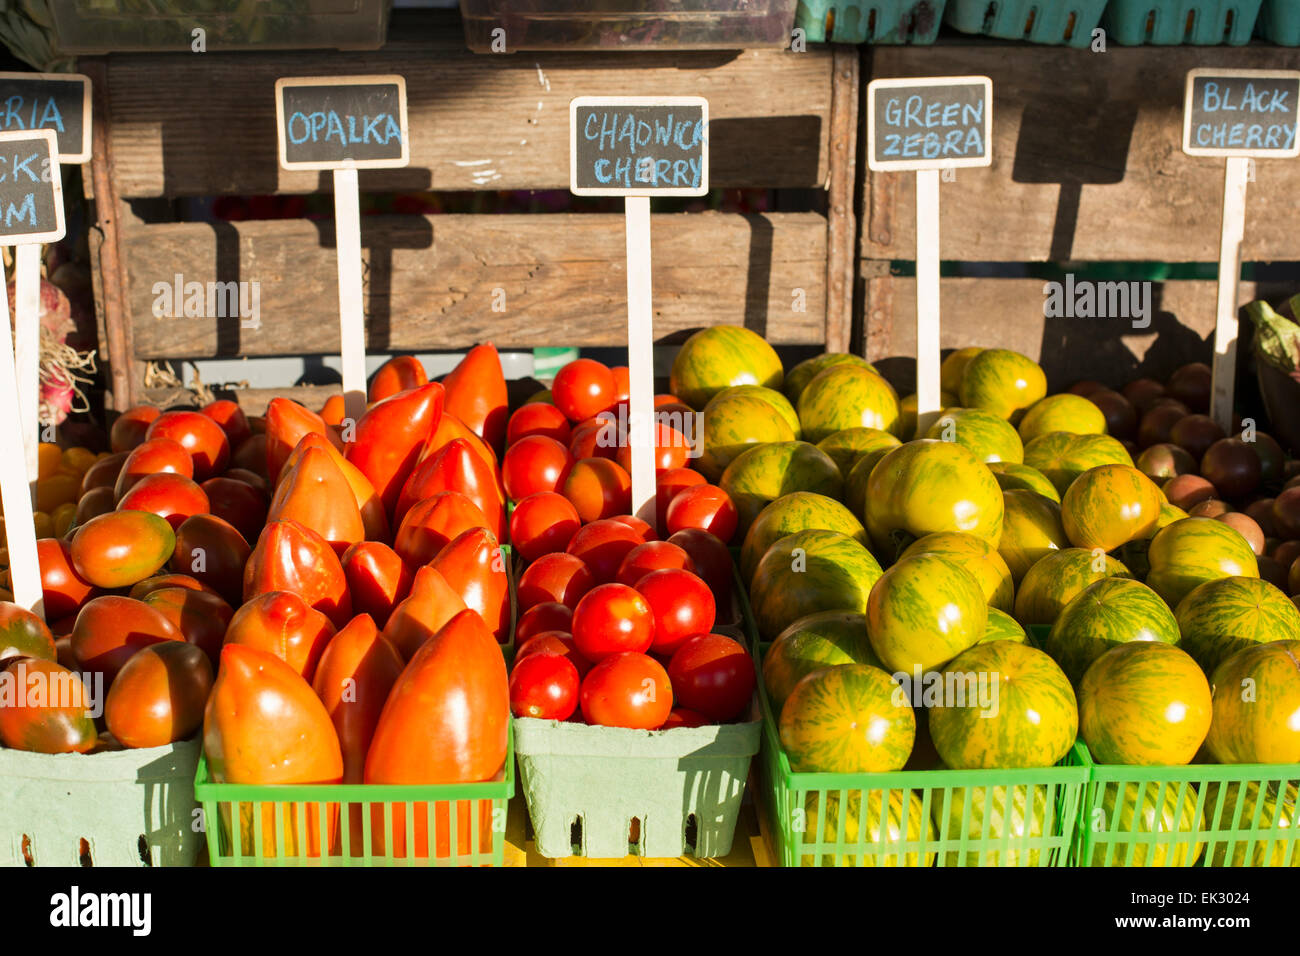 Kanada, Ontario, Niagara-on-the-Lake, Anzeige von Obst und Gemüse auf einem Obstmarkt Straße Seite Stockfoto